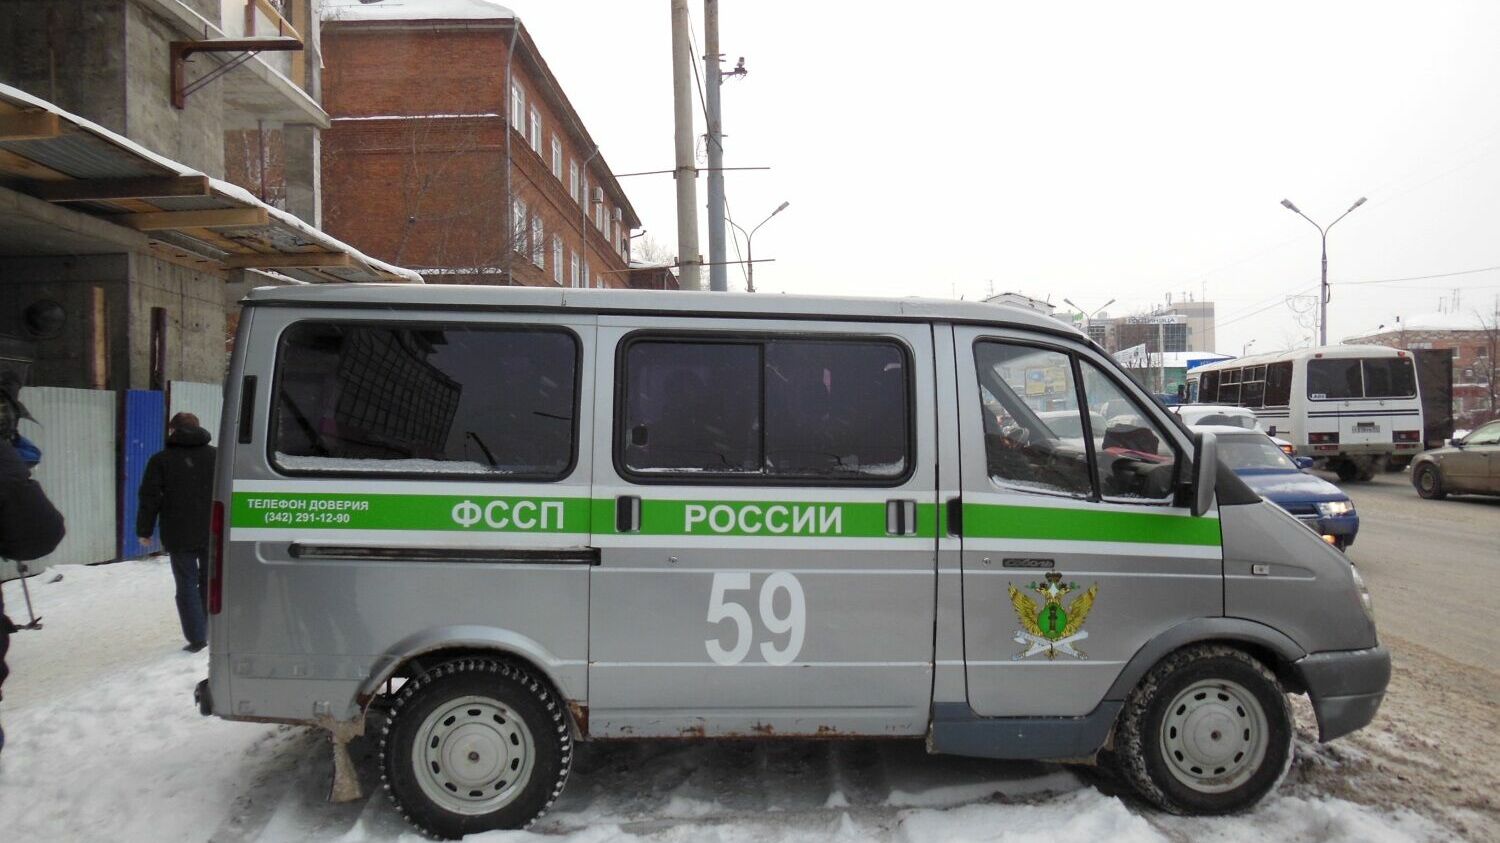 Незаконная стройка на Попова: подрядчика оштрафовали на 20 тысяч рублей